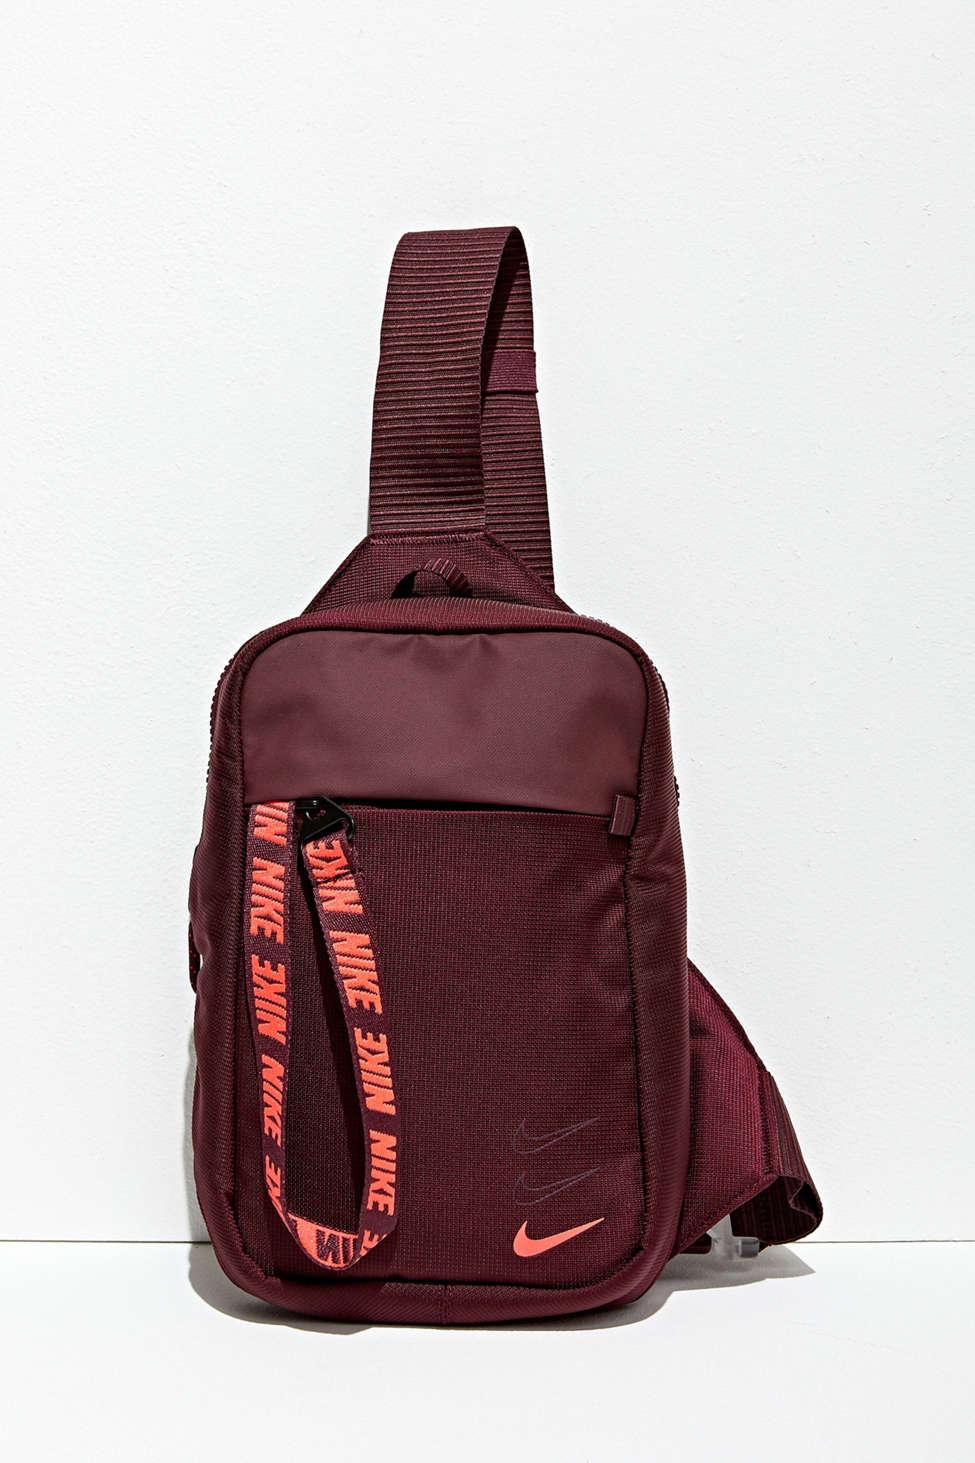 Qoo10 - Nike Bag/Nike Duffle bag/Nike Backpack/Nike School bag/Nike Sport  bag/... : Bag / Shoes / Ac...